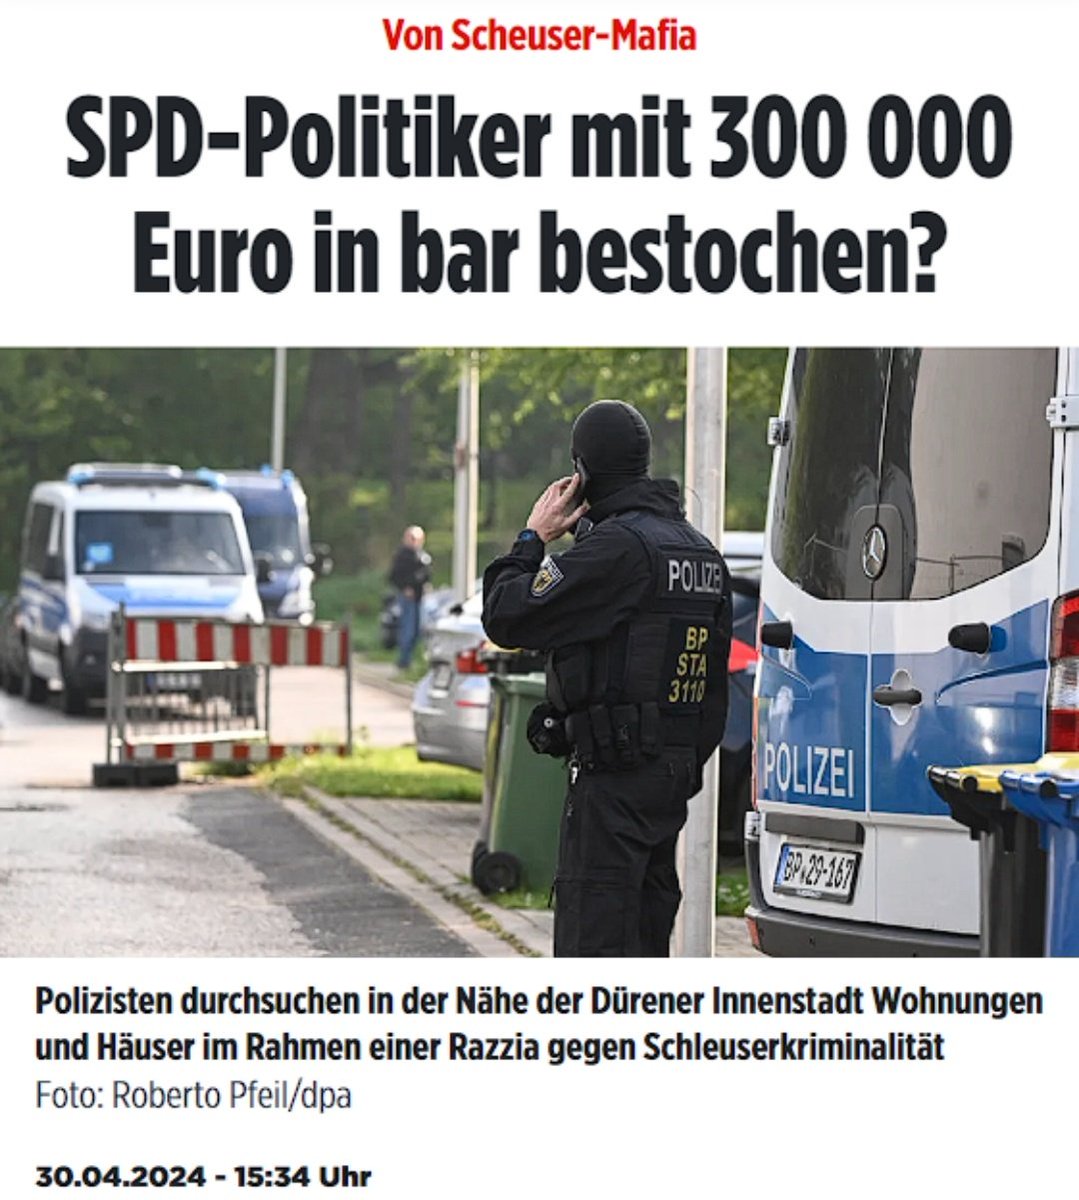 #SPD Politiker mit 300.000 € in bar bestochen. SKANDAL! Ich fordere ein Parteiverbotsverfahren gegen die @spdde. Wer noch? 🇩🇪 #Schleuser #Faeser #Maischberger #Lanz